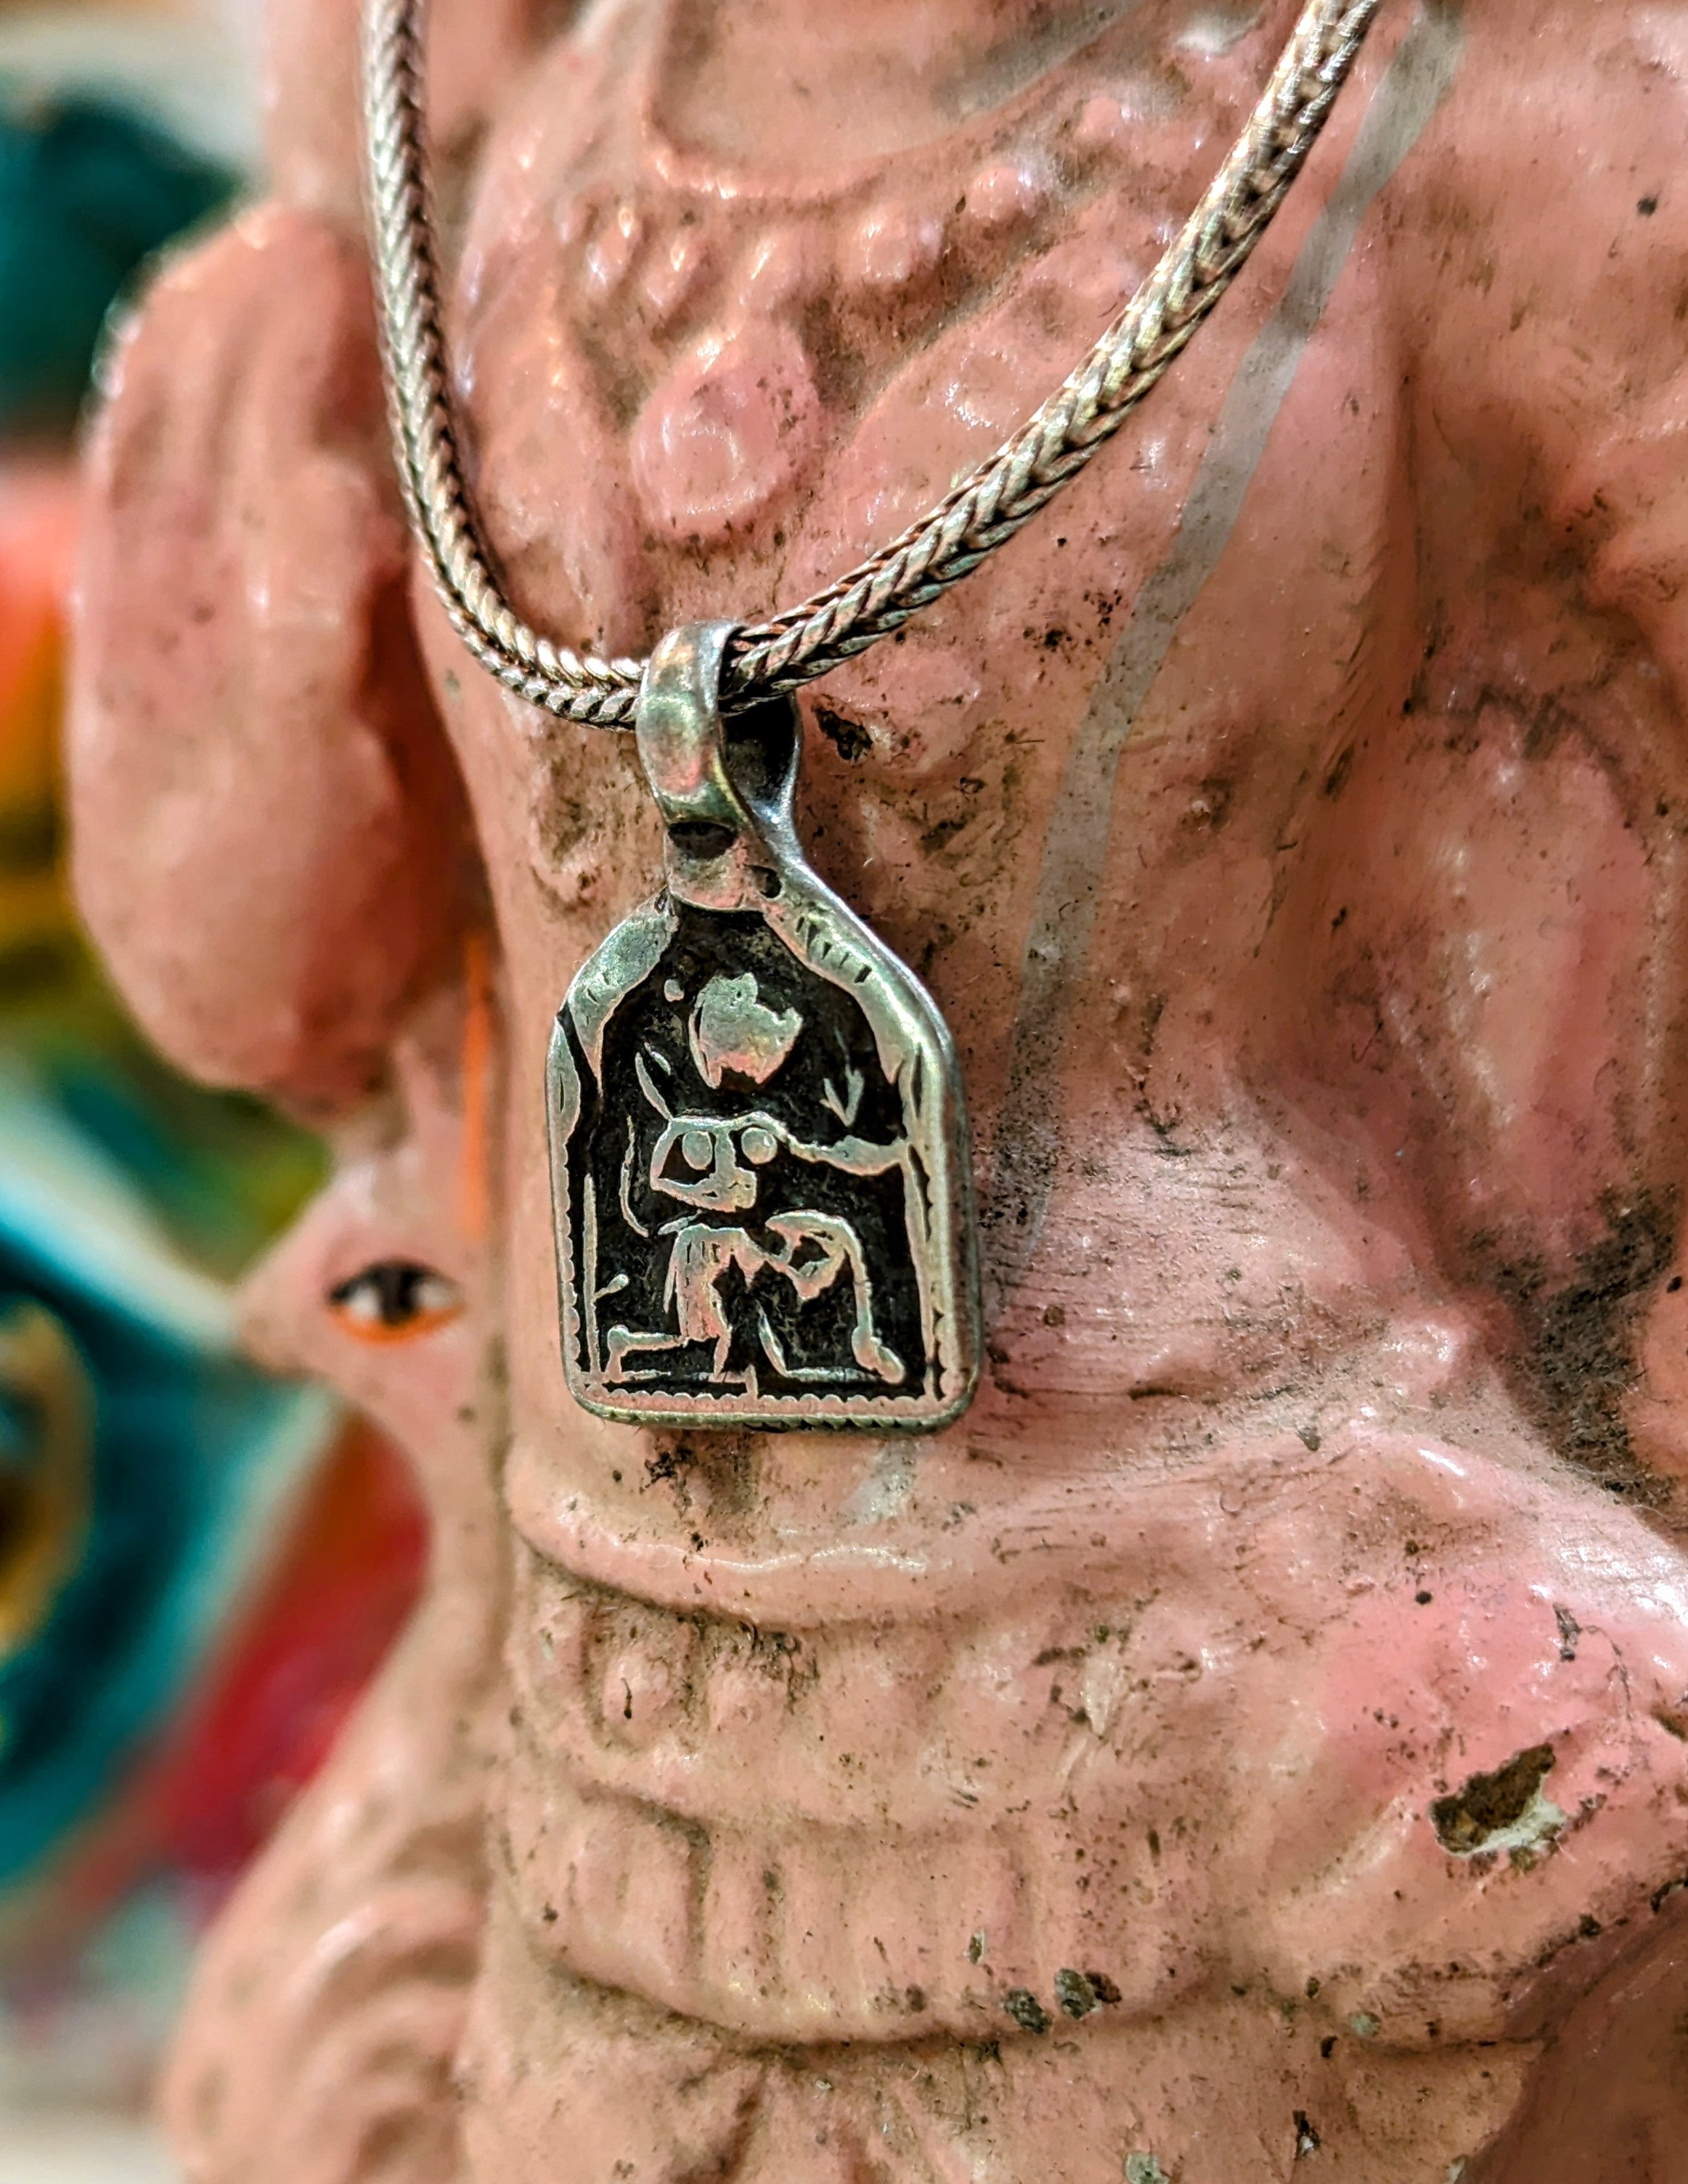 Antique Indian god amulet pendants - Hanuman